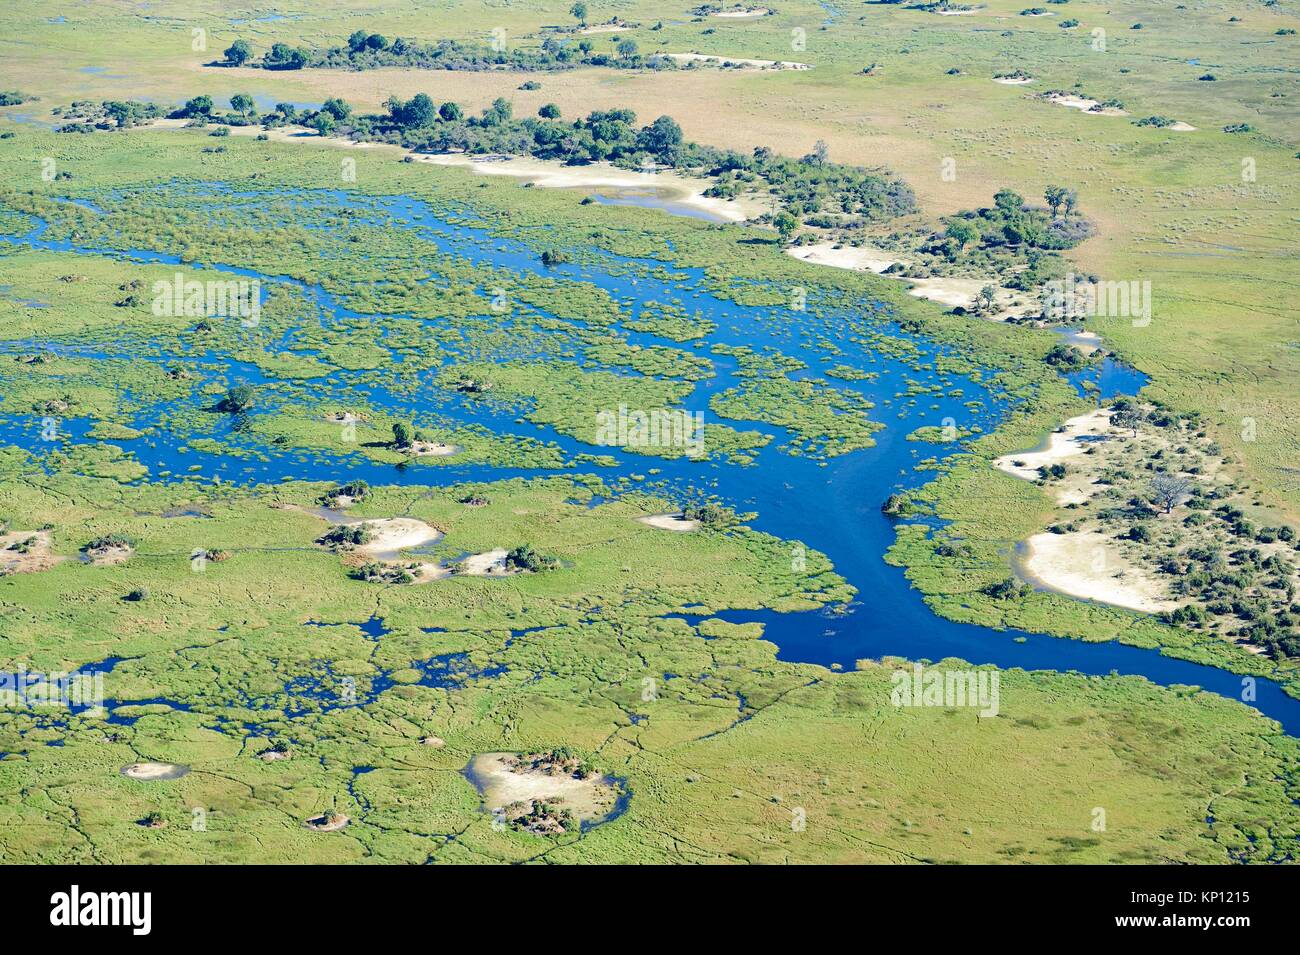 Vista aérea del delta del Okavango con canales, lagunas, pantanos y las islas, Botswana, África. Foto de stock